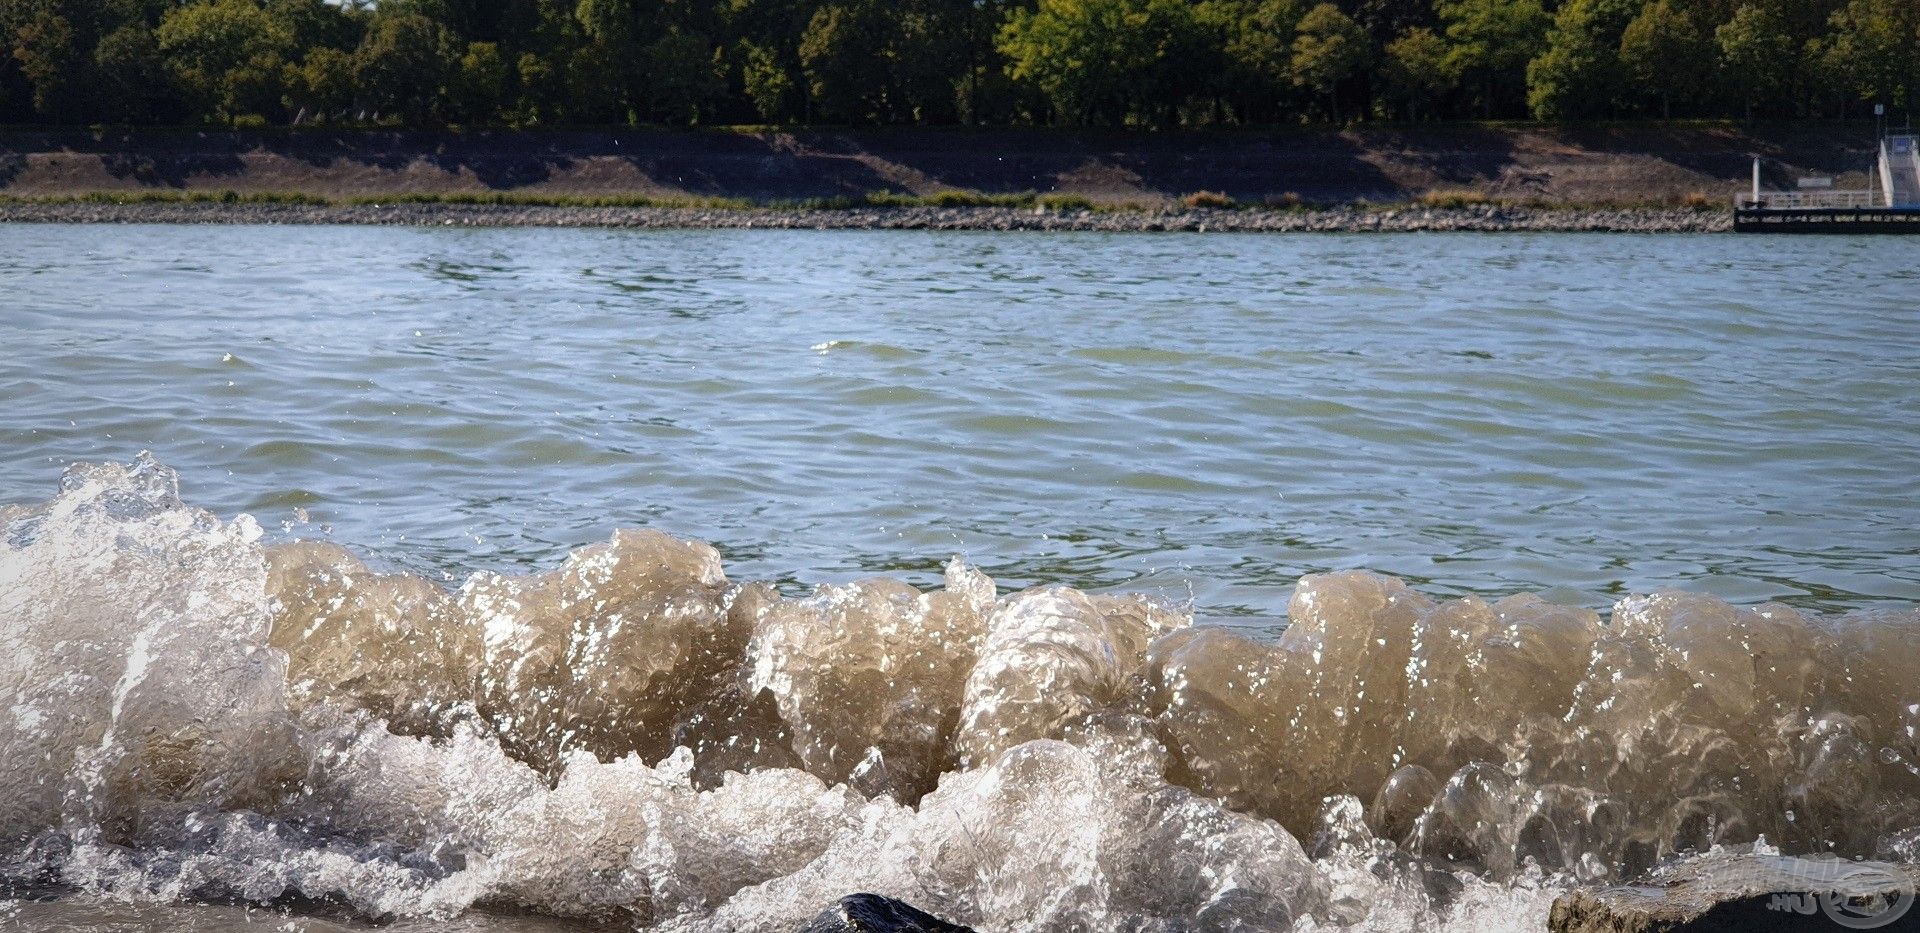 … ellentétben a folyón nagy sebességgel közlekedő motorcsónakokkal, szállodahajókkal, melyek hatalmas hullámokat korbácsolnak a Duna laposabb partszakaszain